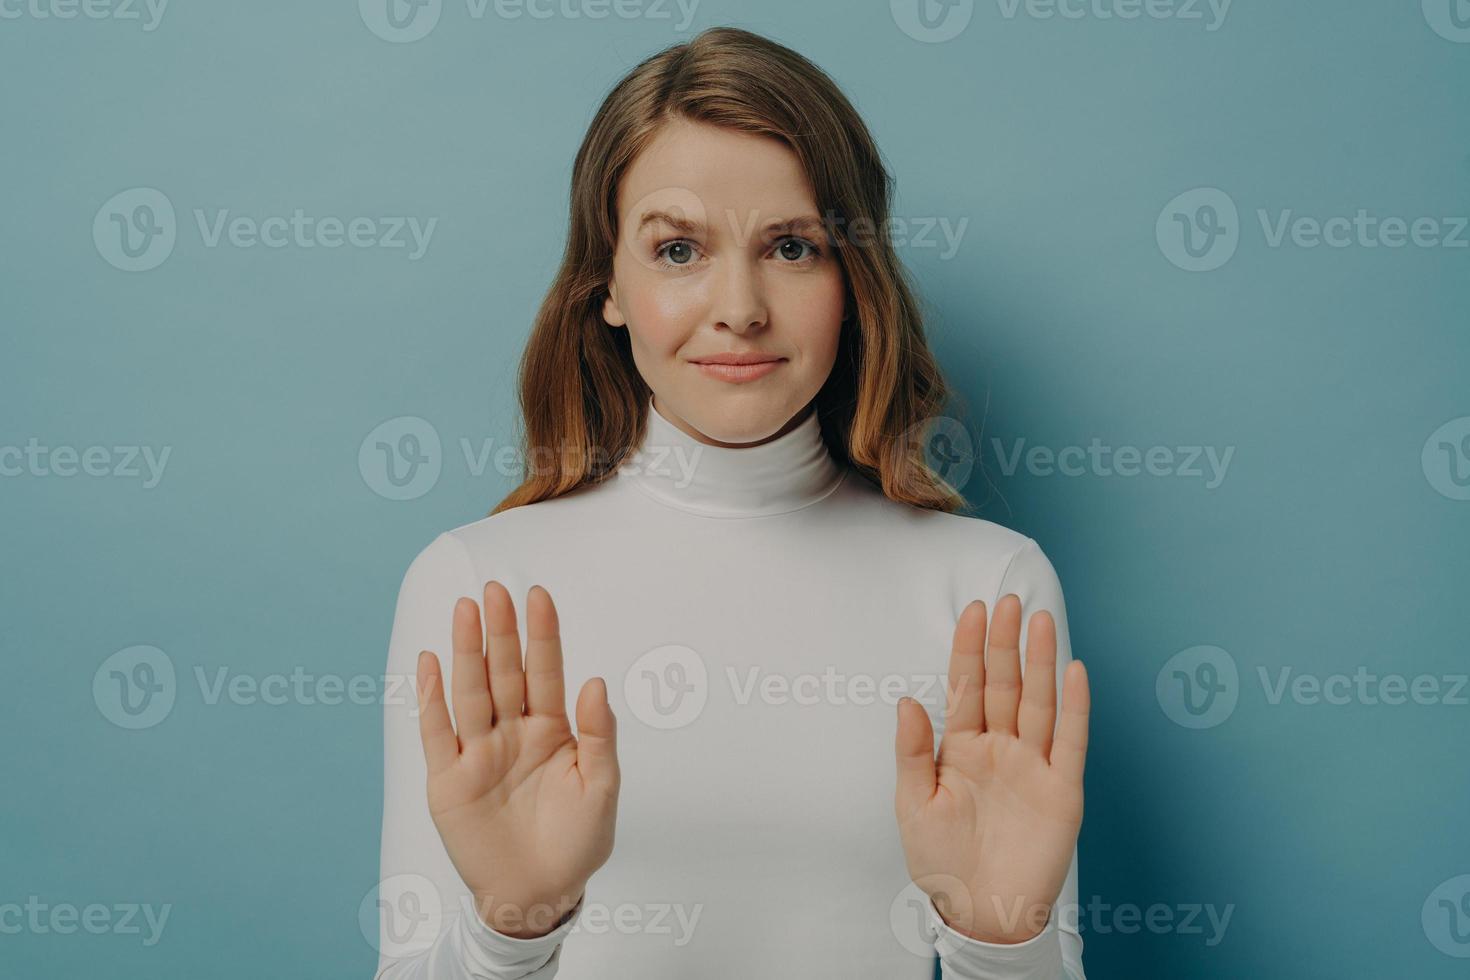 mulher jovem e atraente focada mostrando o gesto de parada, dizendo não, isolada sobre o fundo azul do estúdio foto